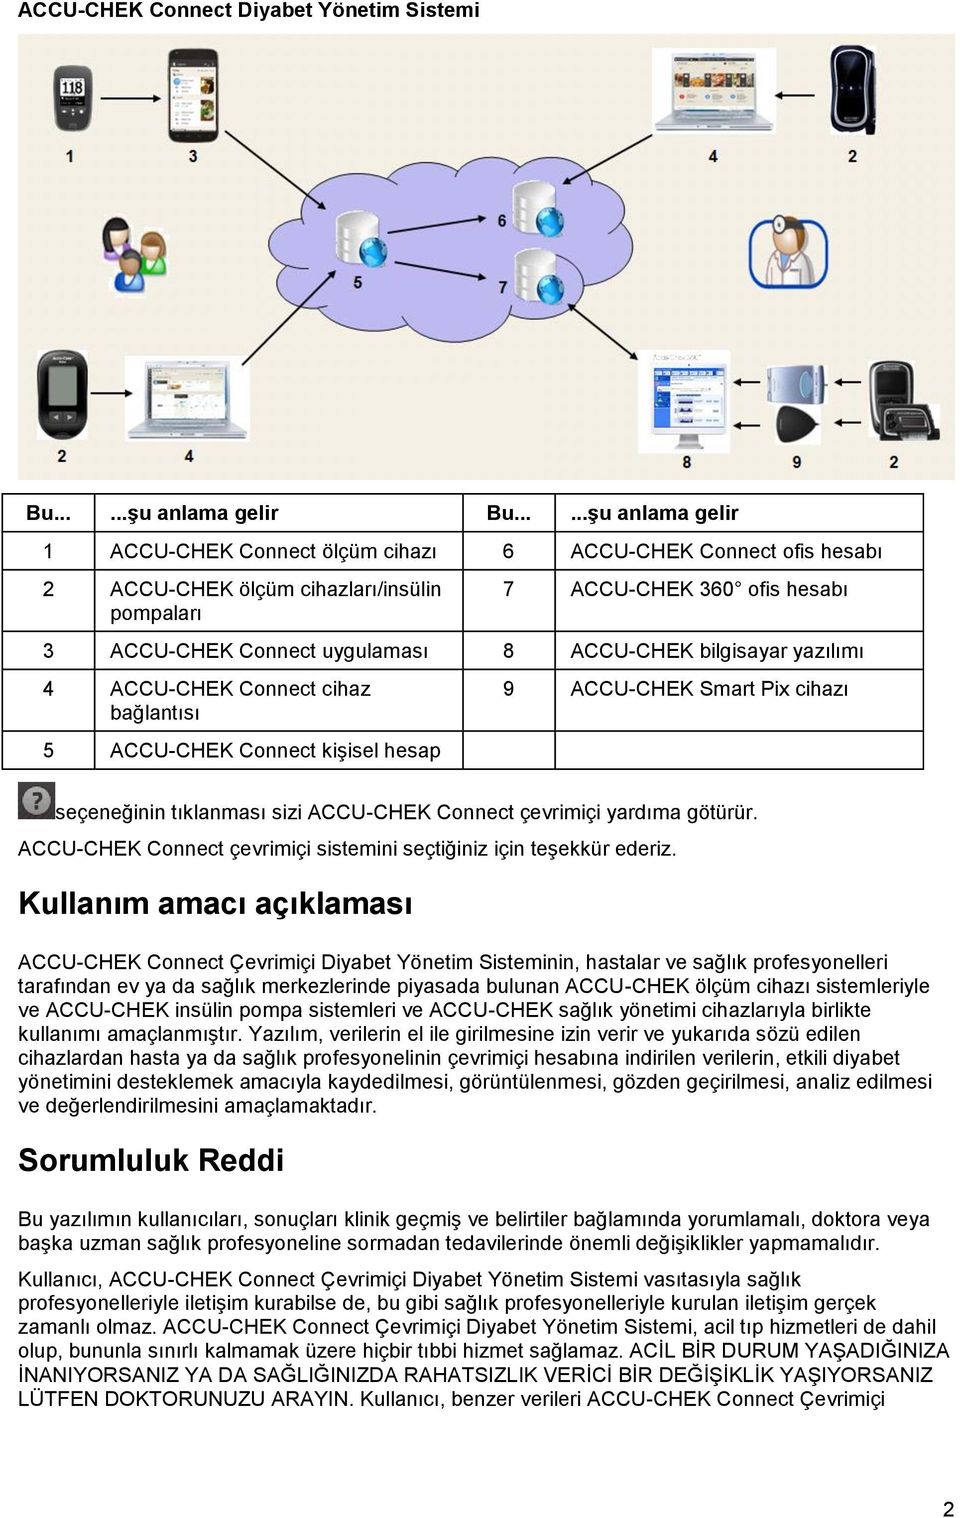 ACCU-CHEK bilgisayar yazılımı 4 ACCU-CHEK Connect cihaz bağlantısı 5 ACCU-CHEK Connect kişisel hesap 9 ACCU-CHEK Smart Pix cihazı seçeneğinin tıklanması sizi ACCU-CHEK Connect çevrimiçi yardıma